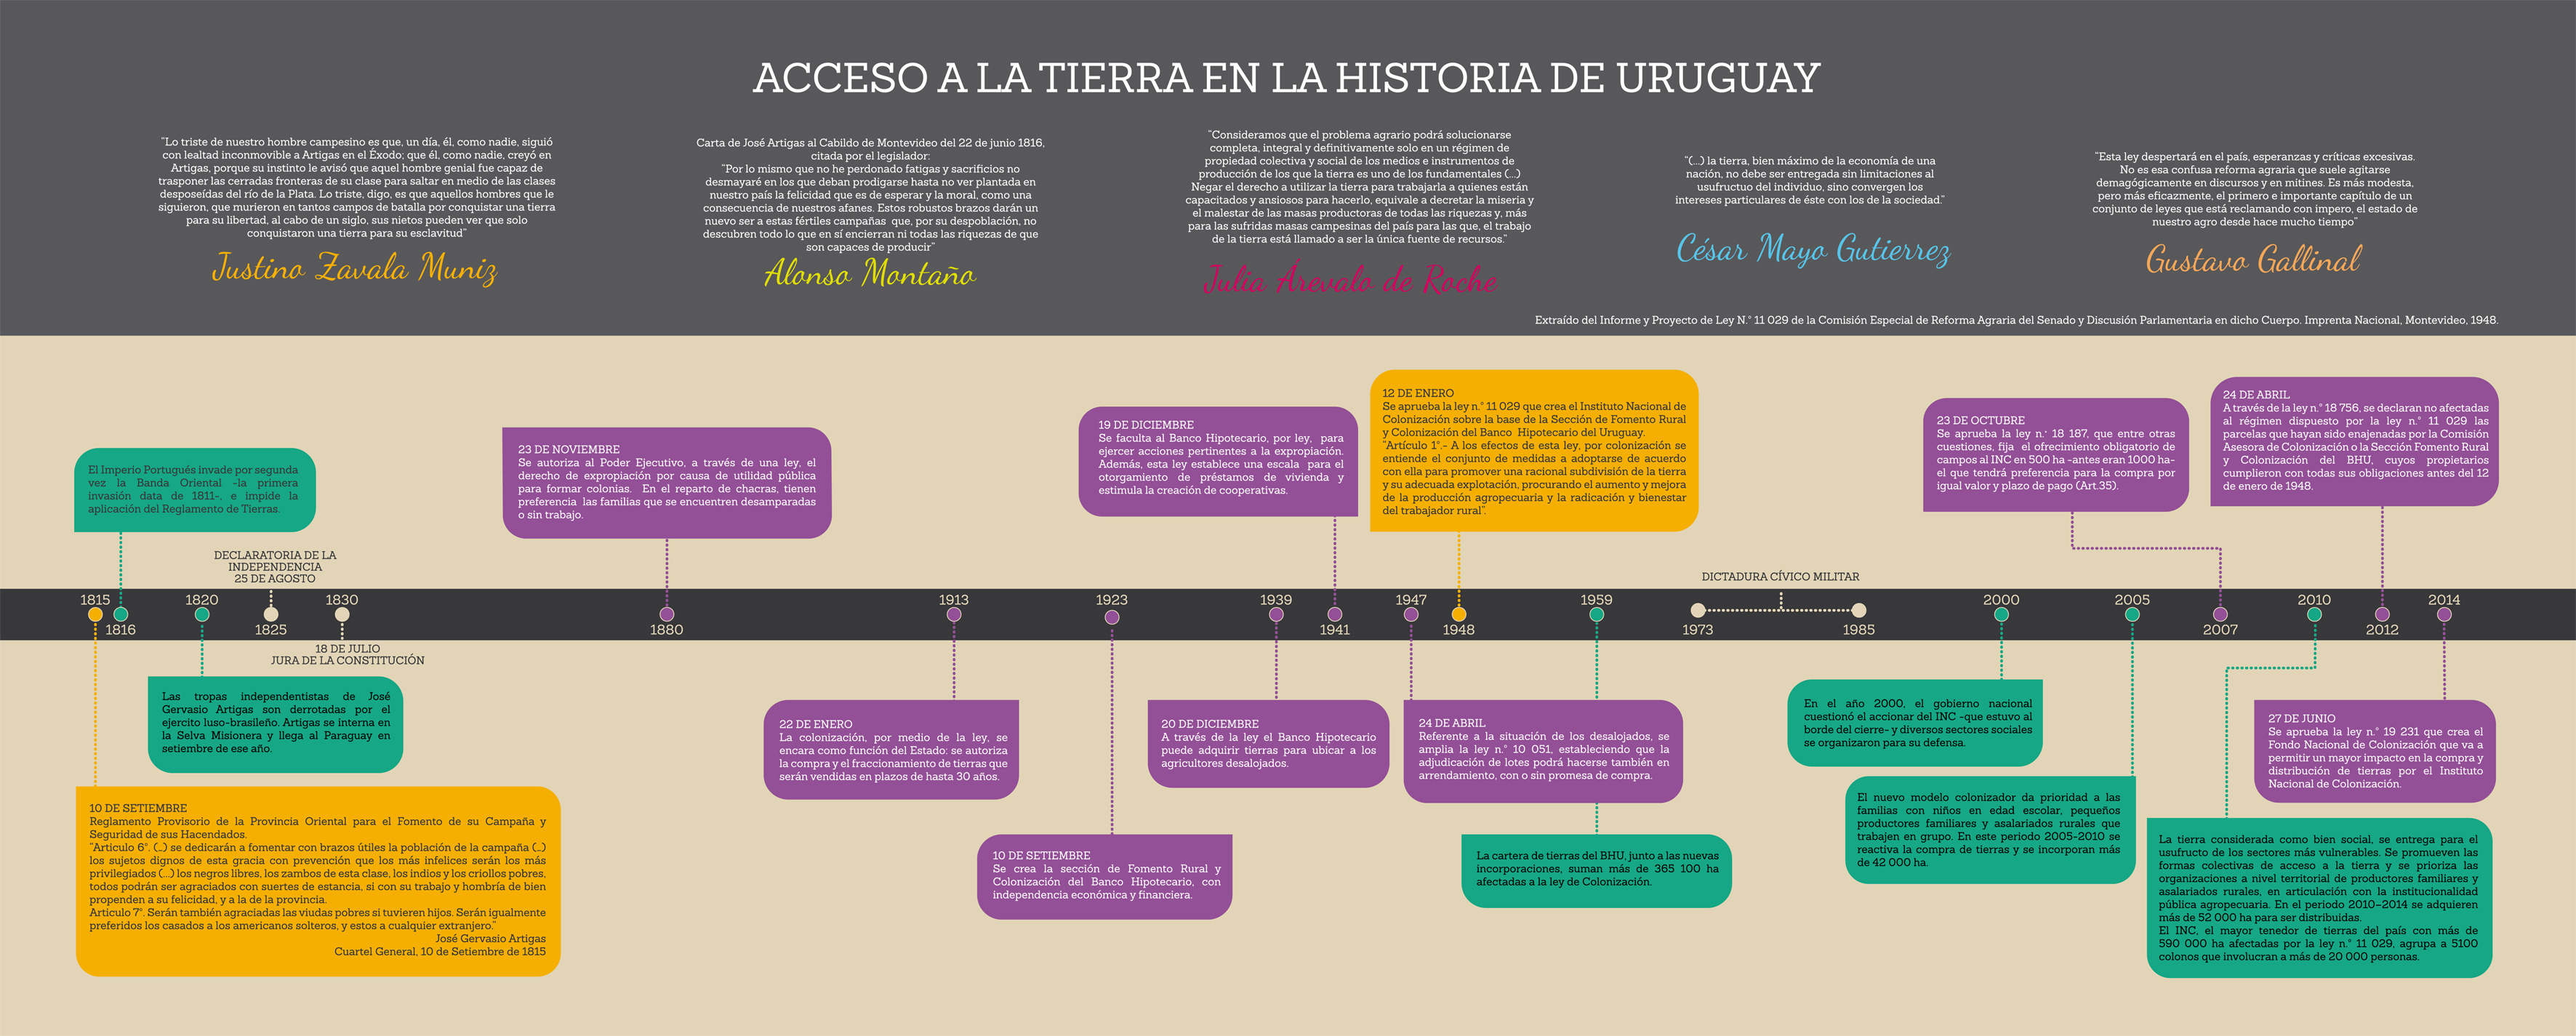 Acceso a la tierra en la historia del Uruguay